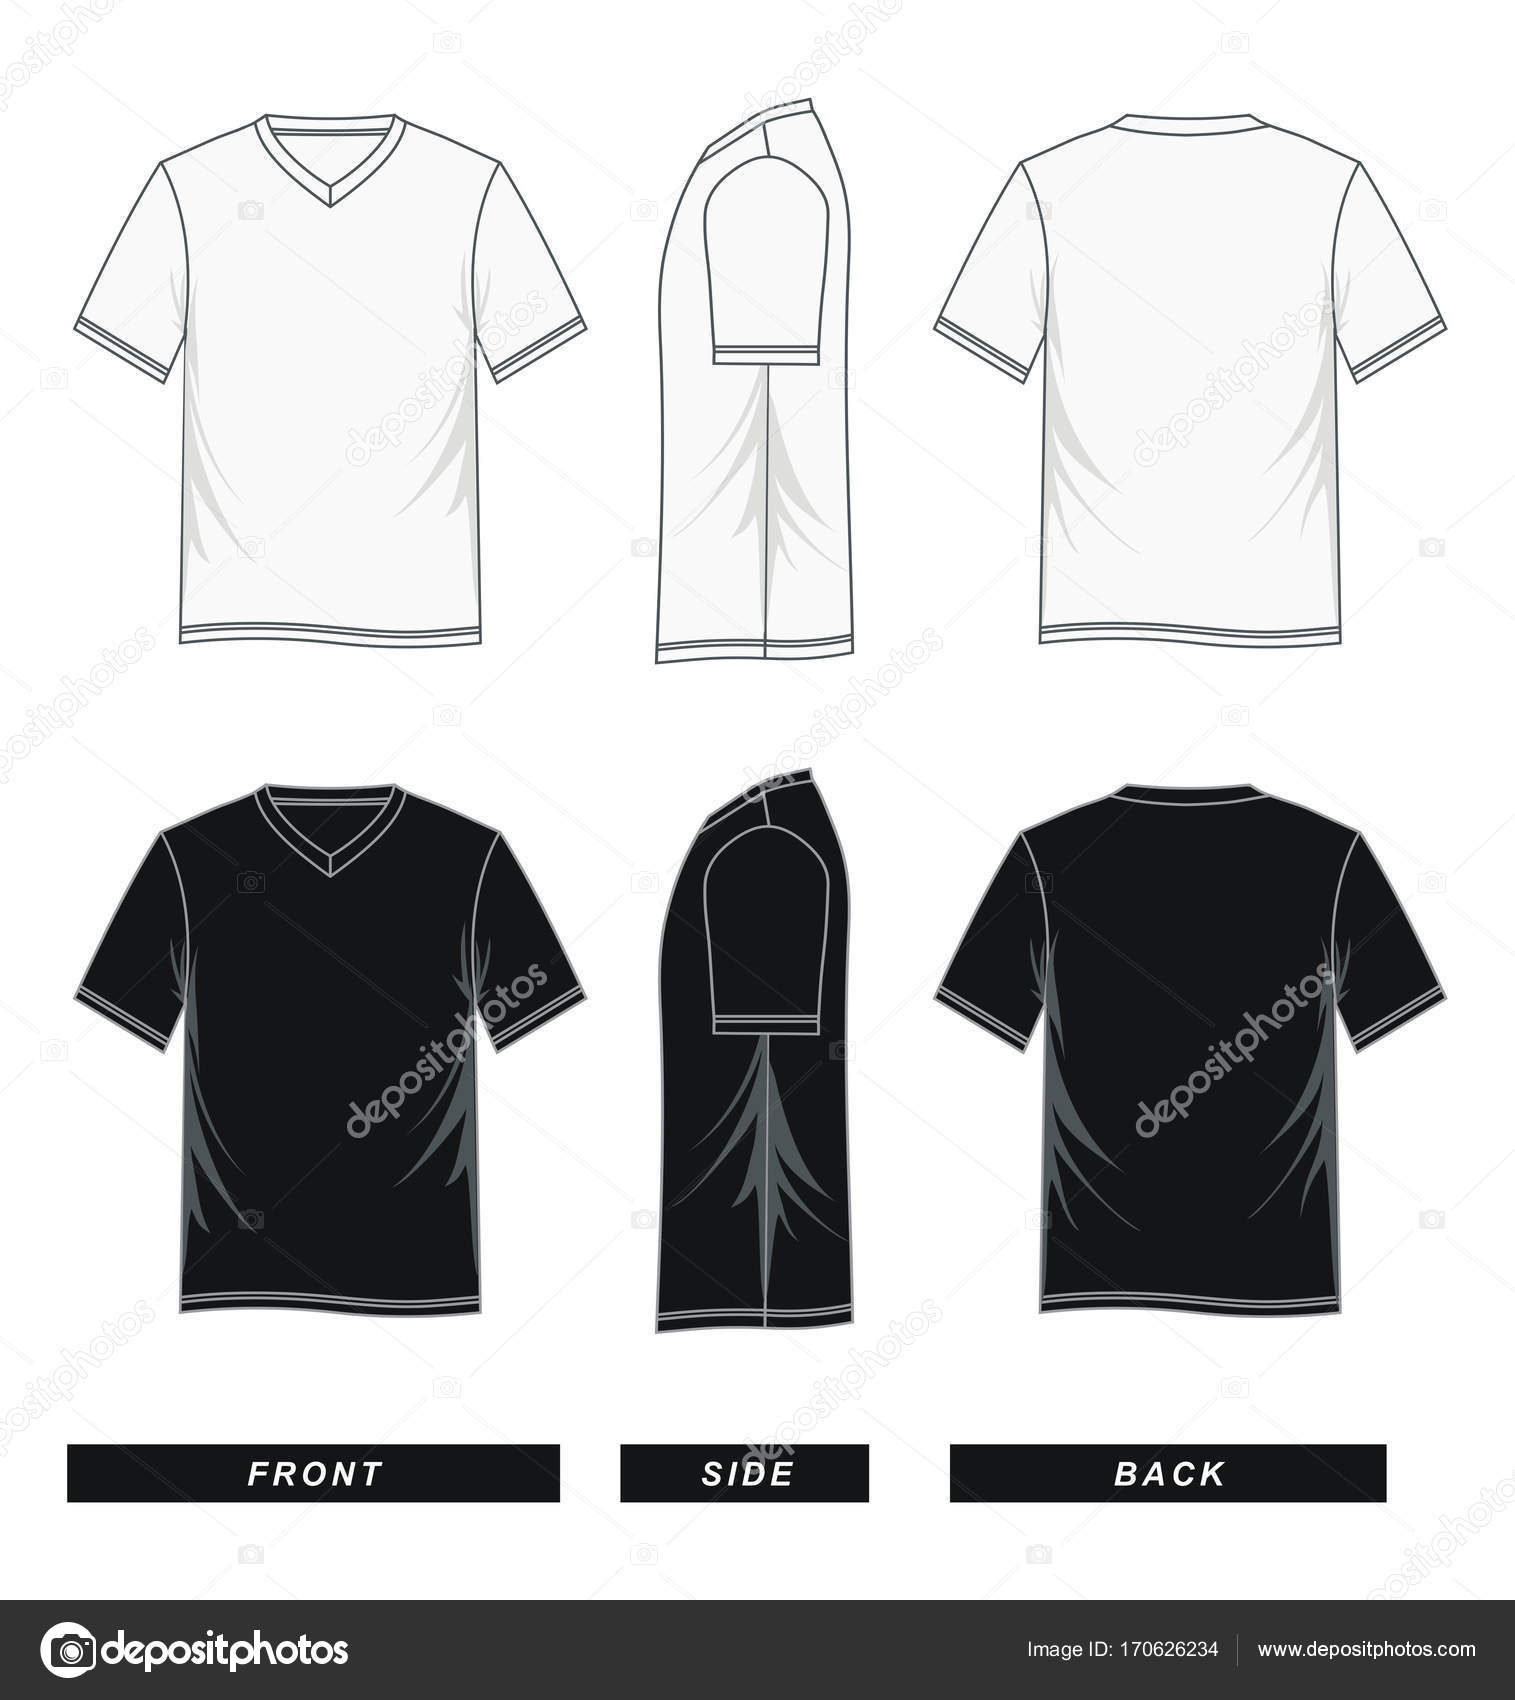 V neck T-shirt short sleeve front, side, back, black white, Stock ...